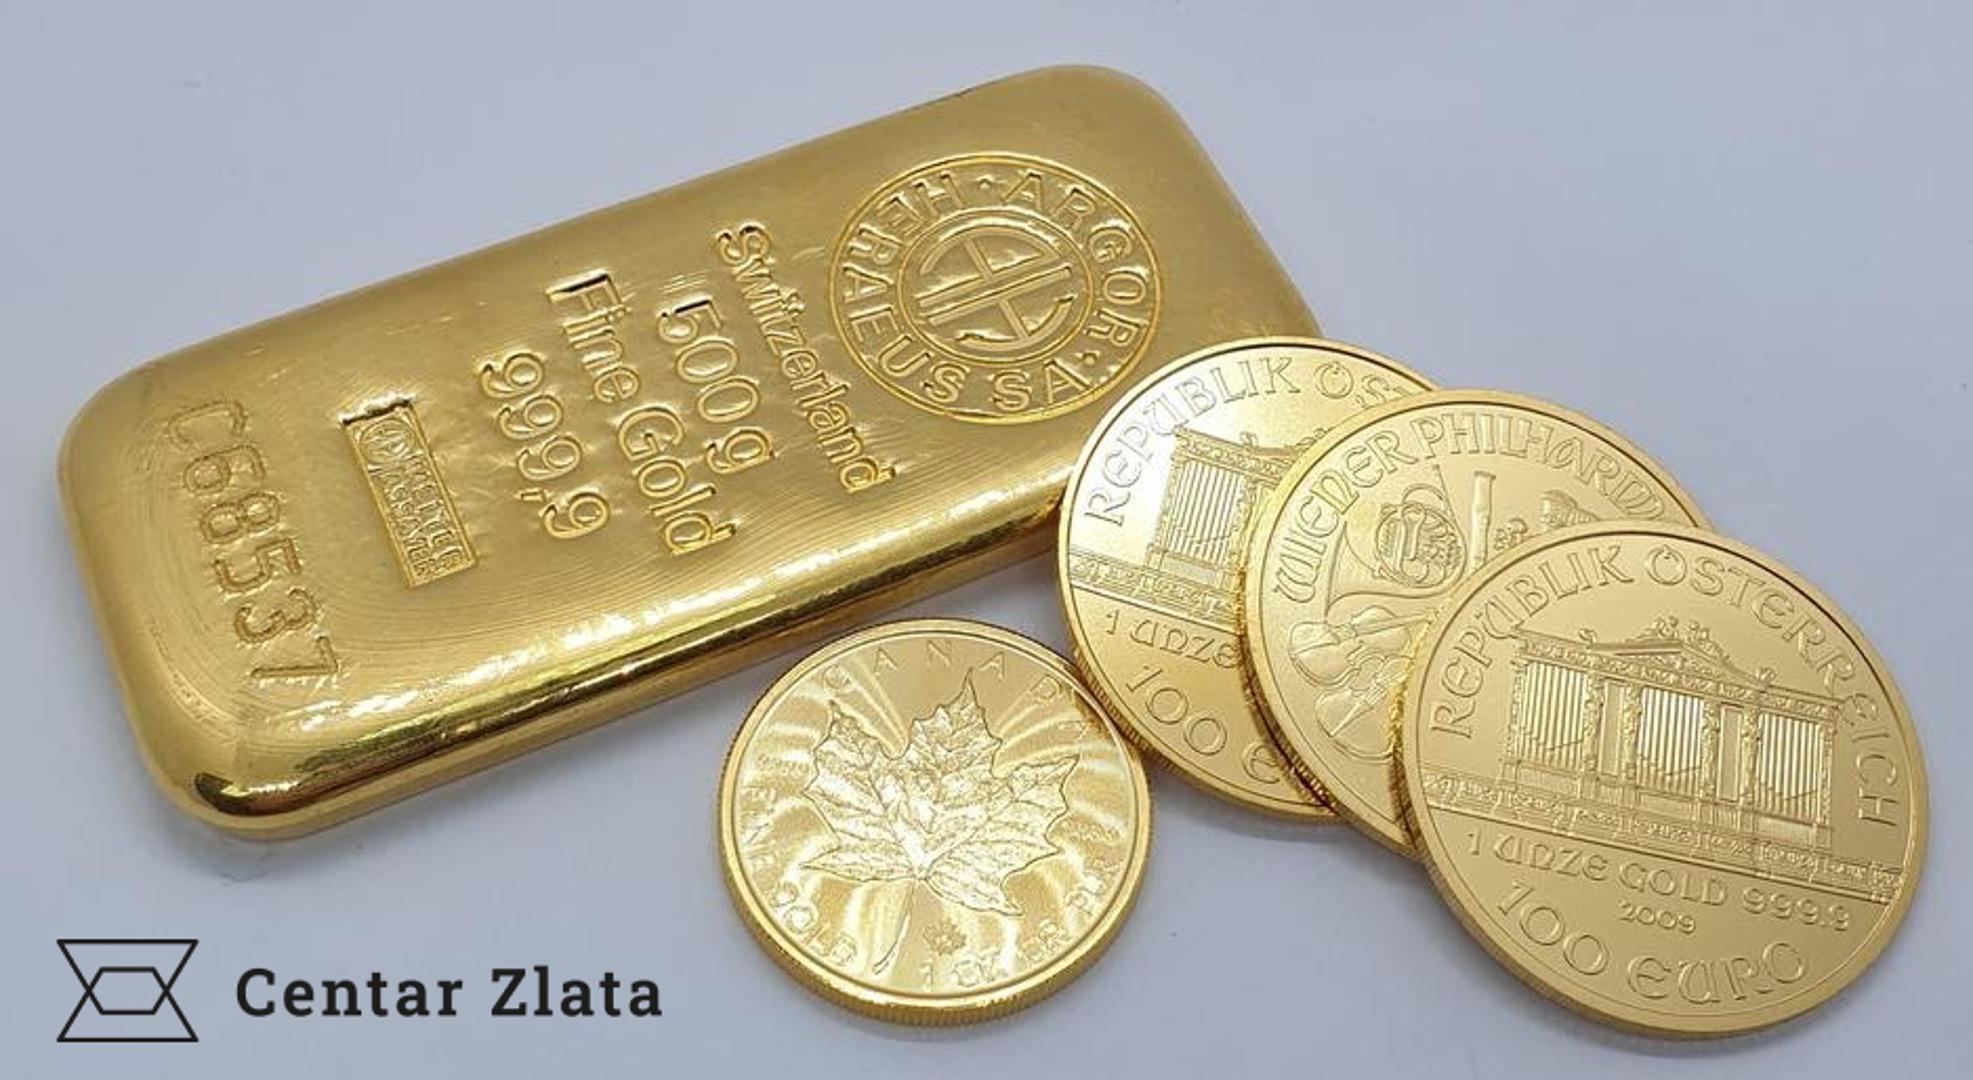 Investicijsko zlato dolazi u obliku fizičkih zlatnika i zlatnih poluga visoke čistoće